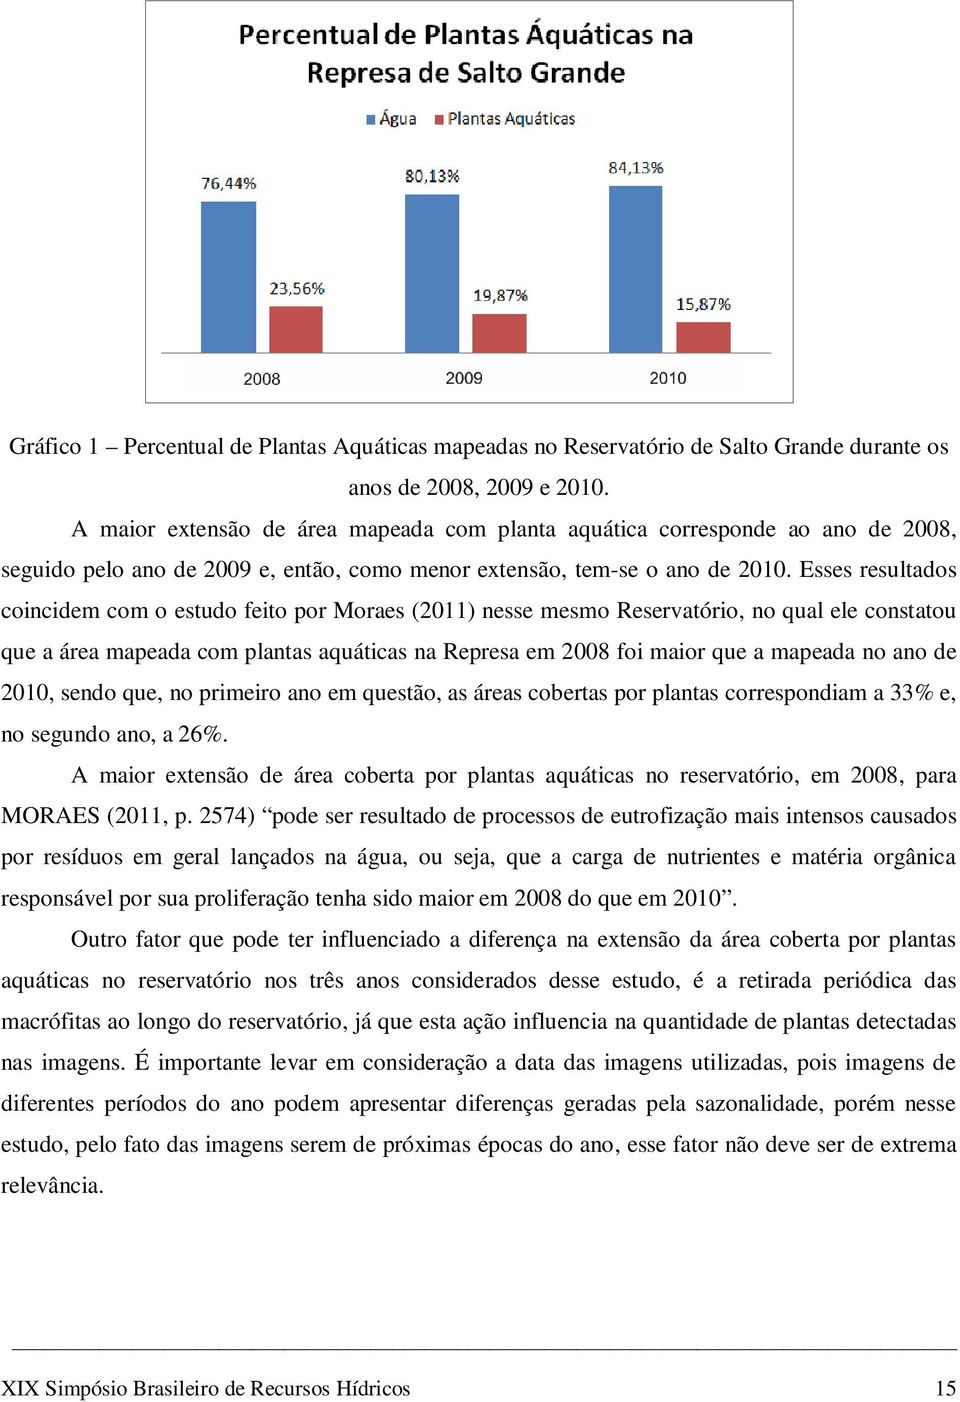 Esses resultados coincidem com o estudo feito por Moraes (2011) nesse mesmo Reservatório, no qual ele constatou que a área mapeada com plantas aquáticas na Represa em 2008 foi maior que a mapeada no